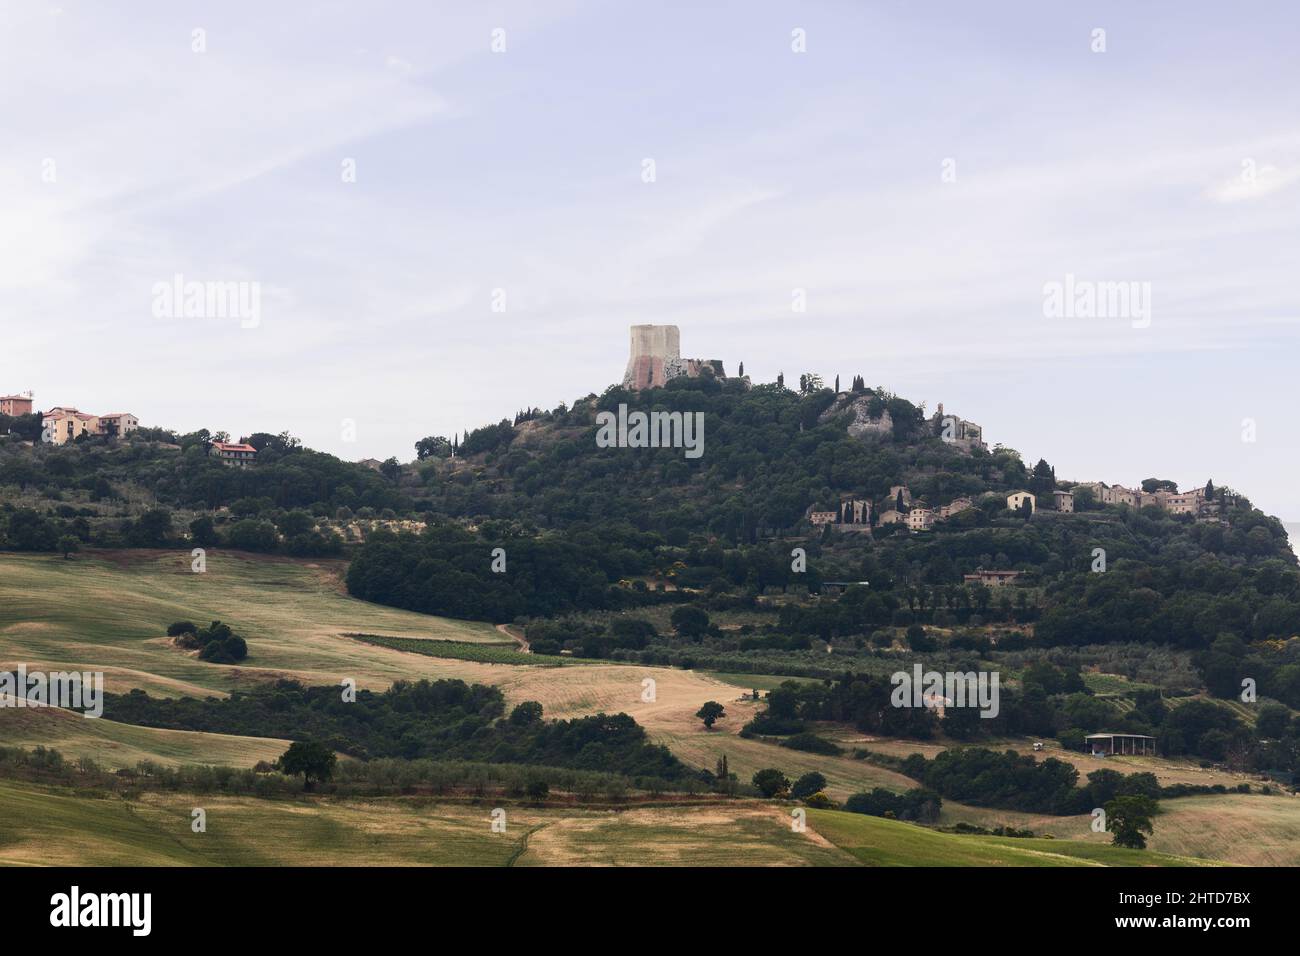 Die Rocca di Tentennano - der mittelalterliche Turm, der das Dorf Rocca d'Orcia dominiert. Toskana, Italien Stockfoto